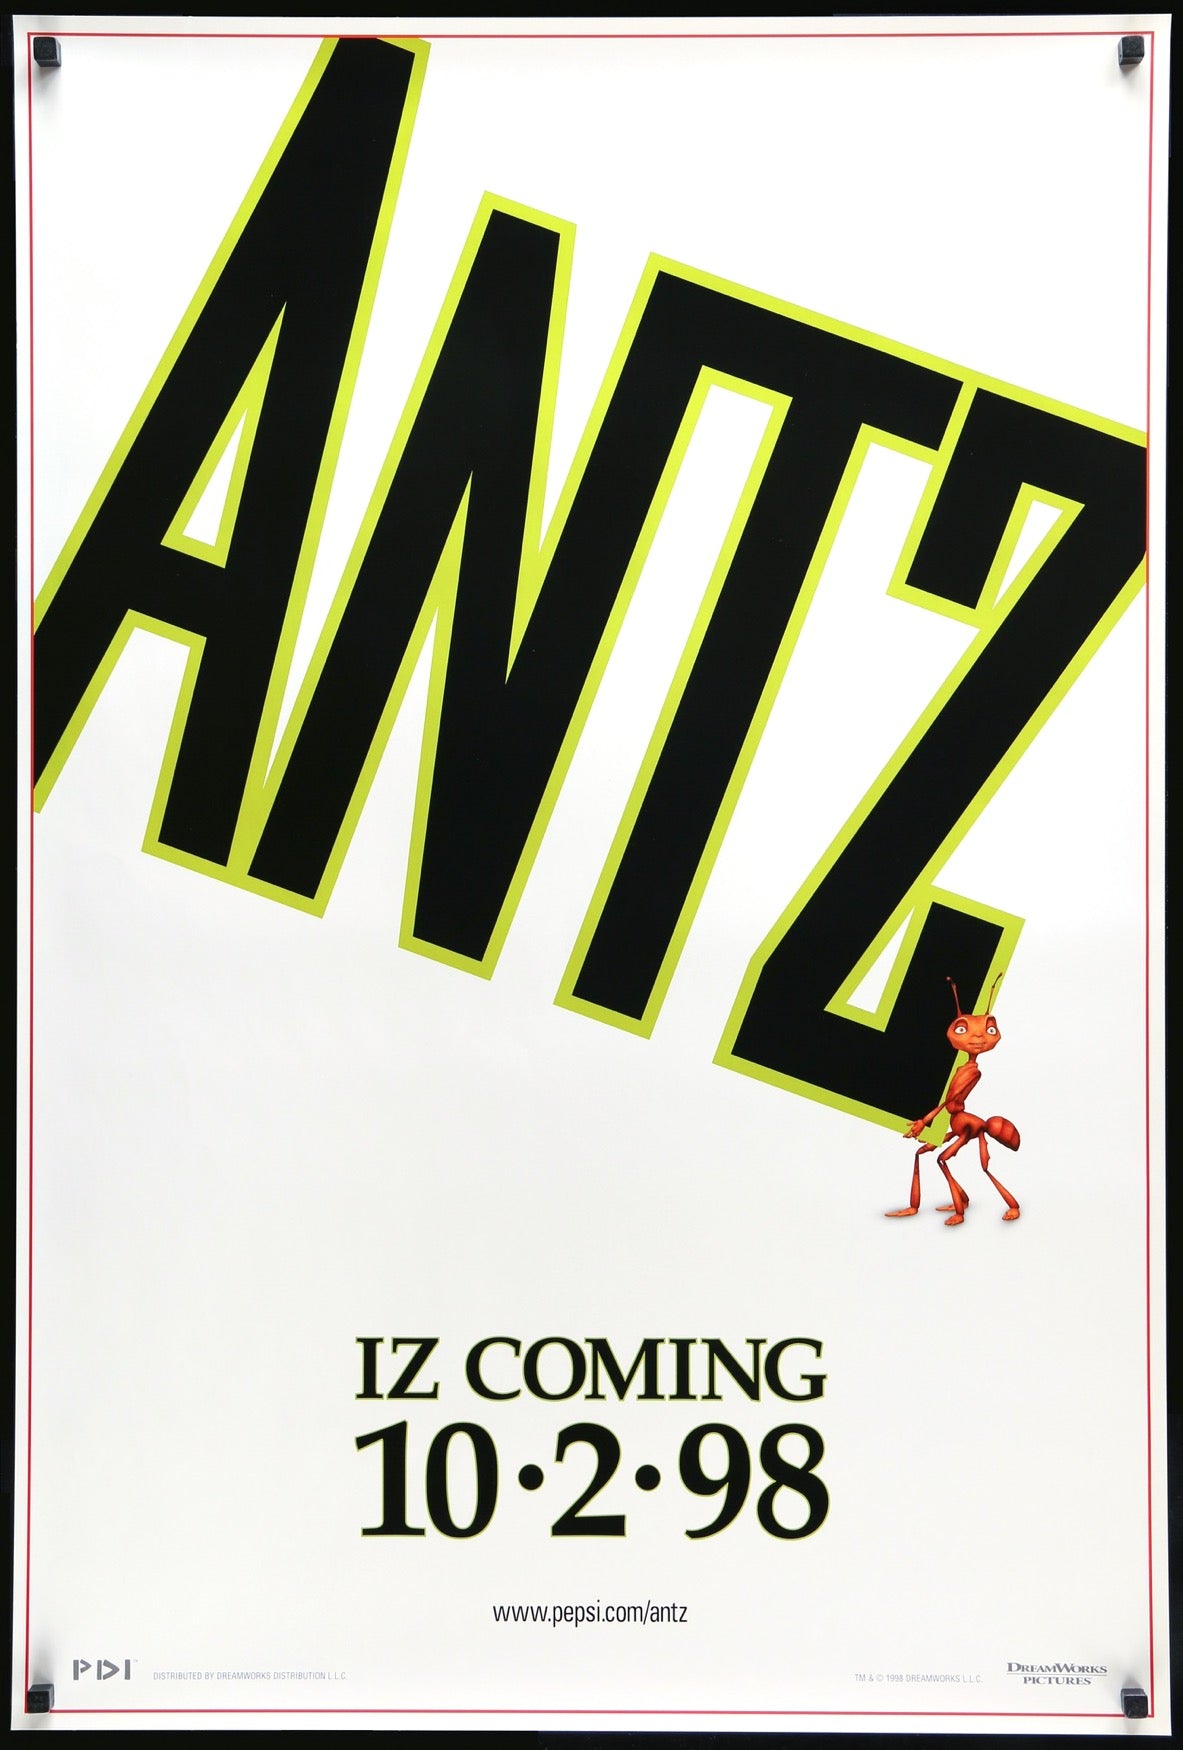 Antz (1998) original movie poster for sale at Original Film Art